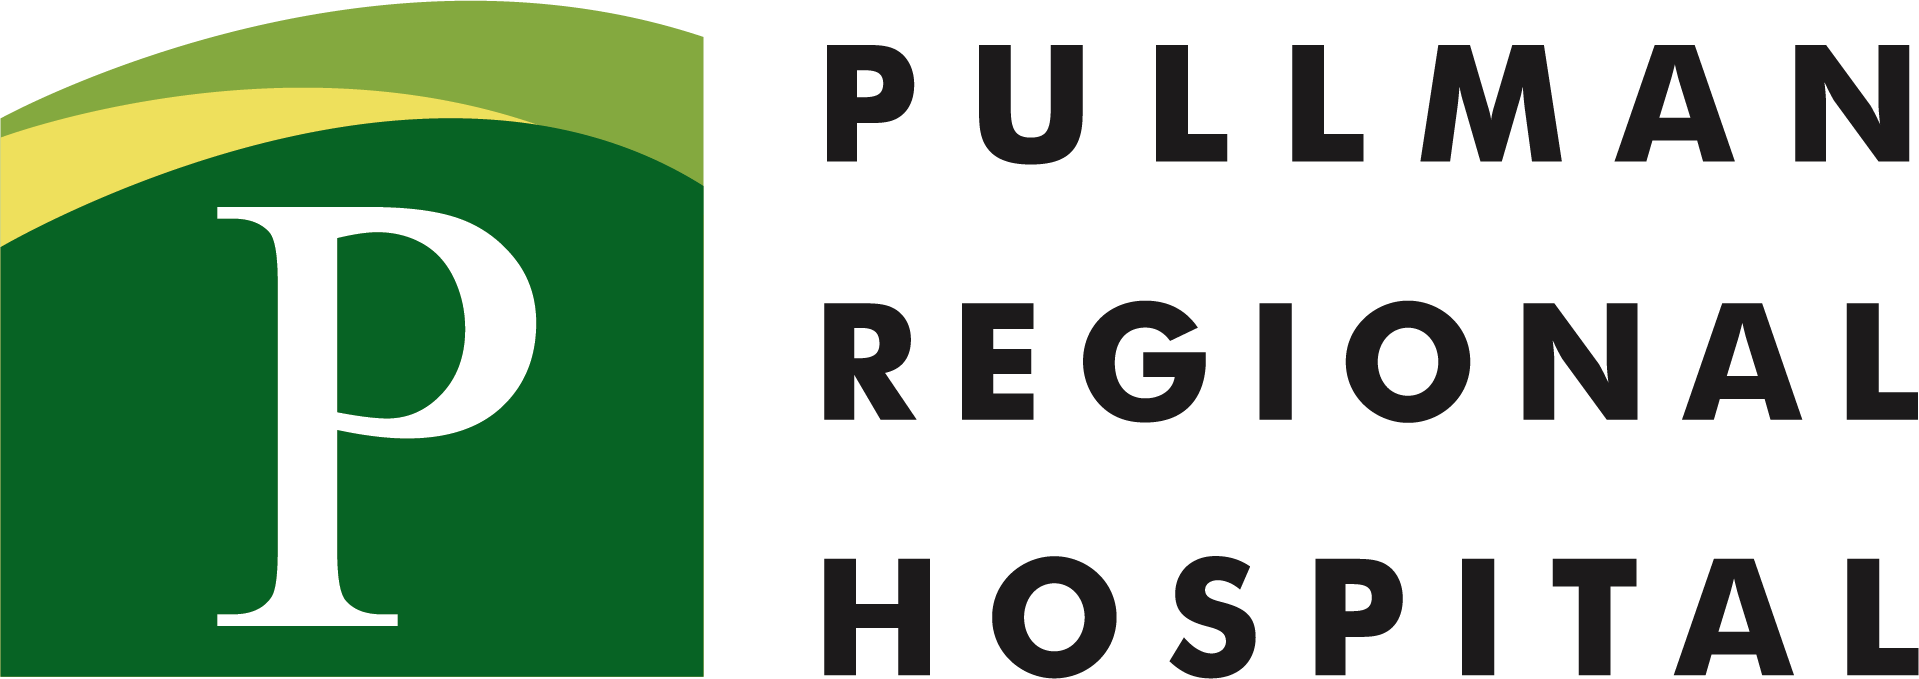 Pullman Regional Hospital_Full color